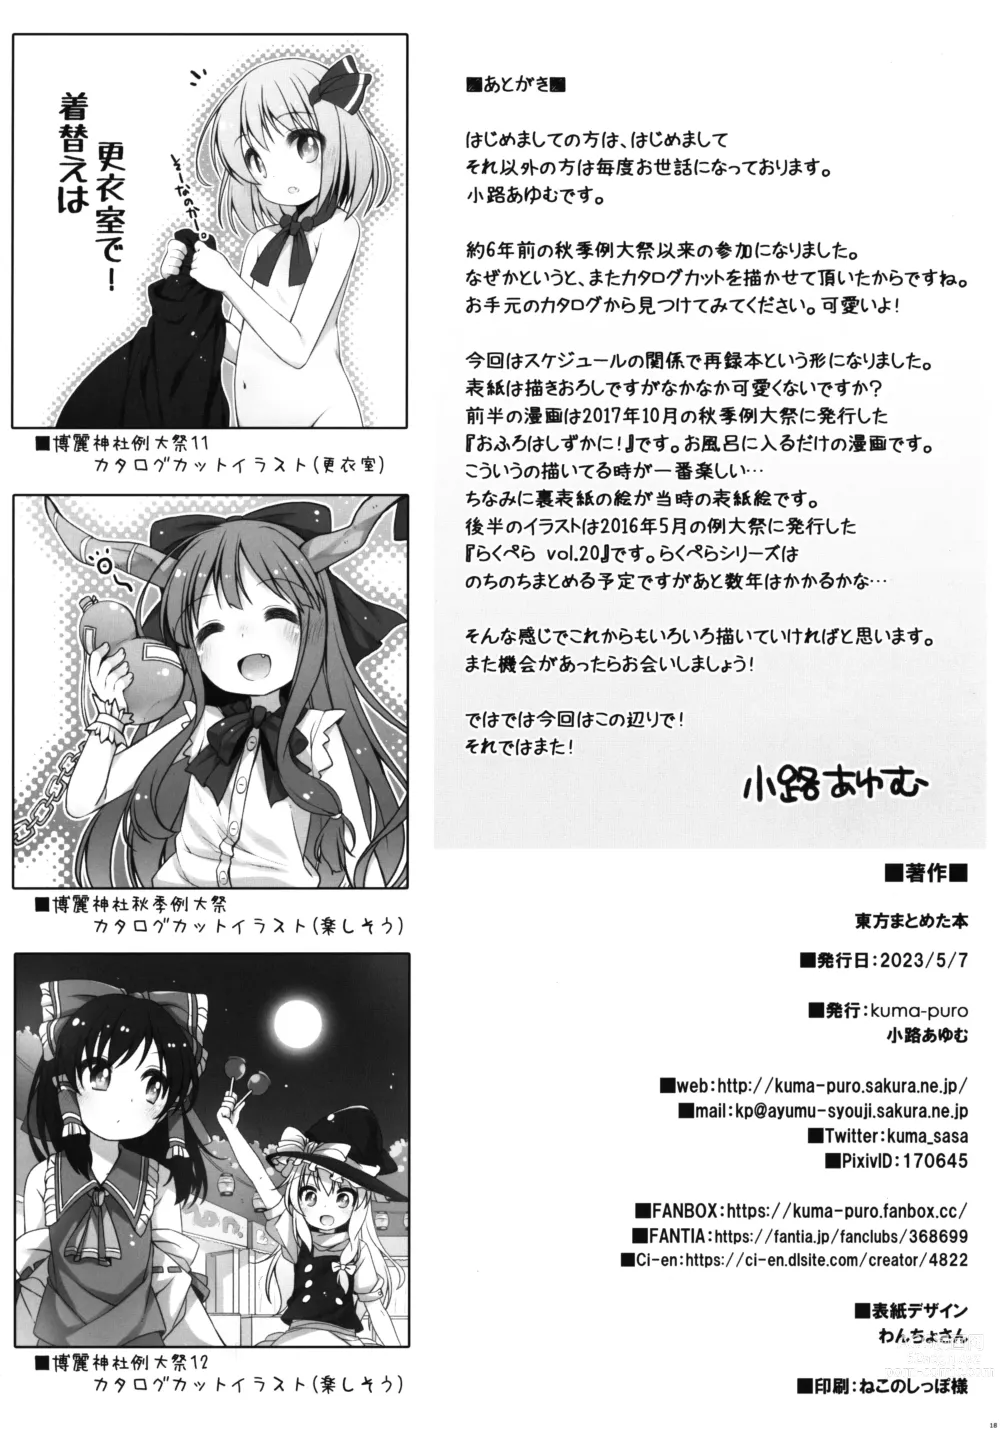 Page 17 of doujinshi Touhou Matome-bon